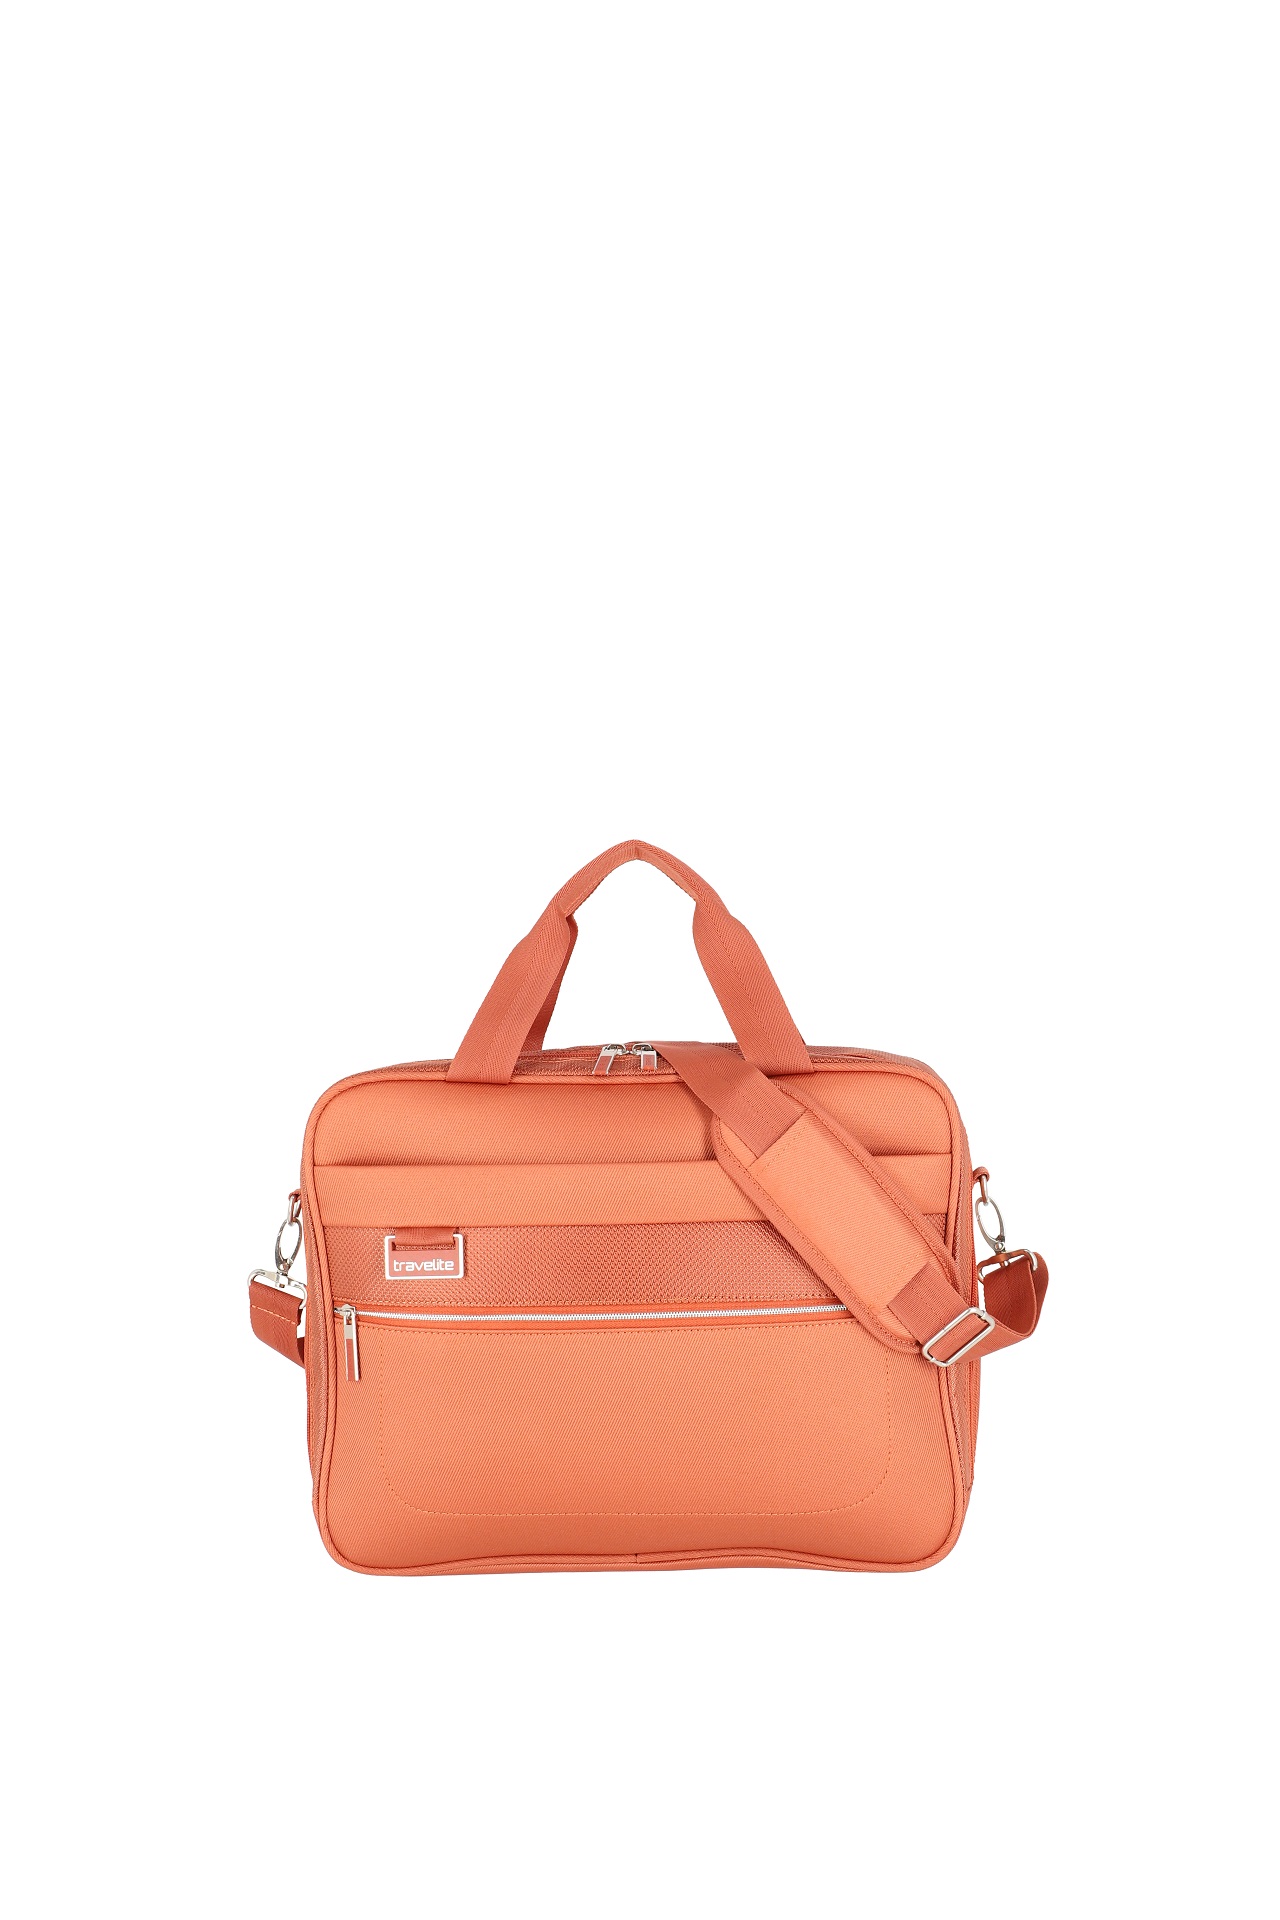 E-shop Travelite Miigo Board bag Copper/chutney